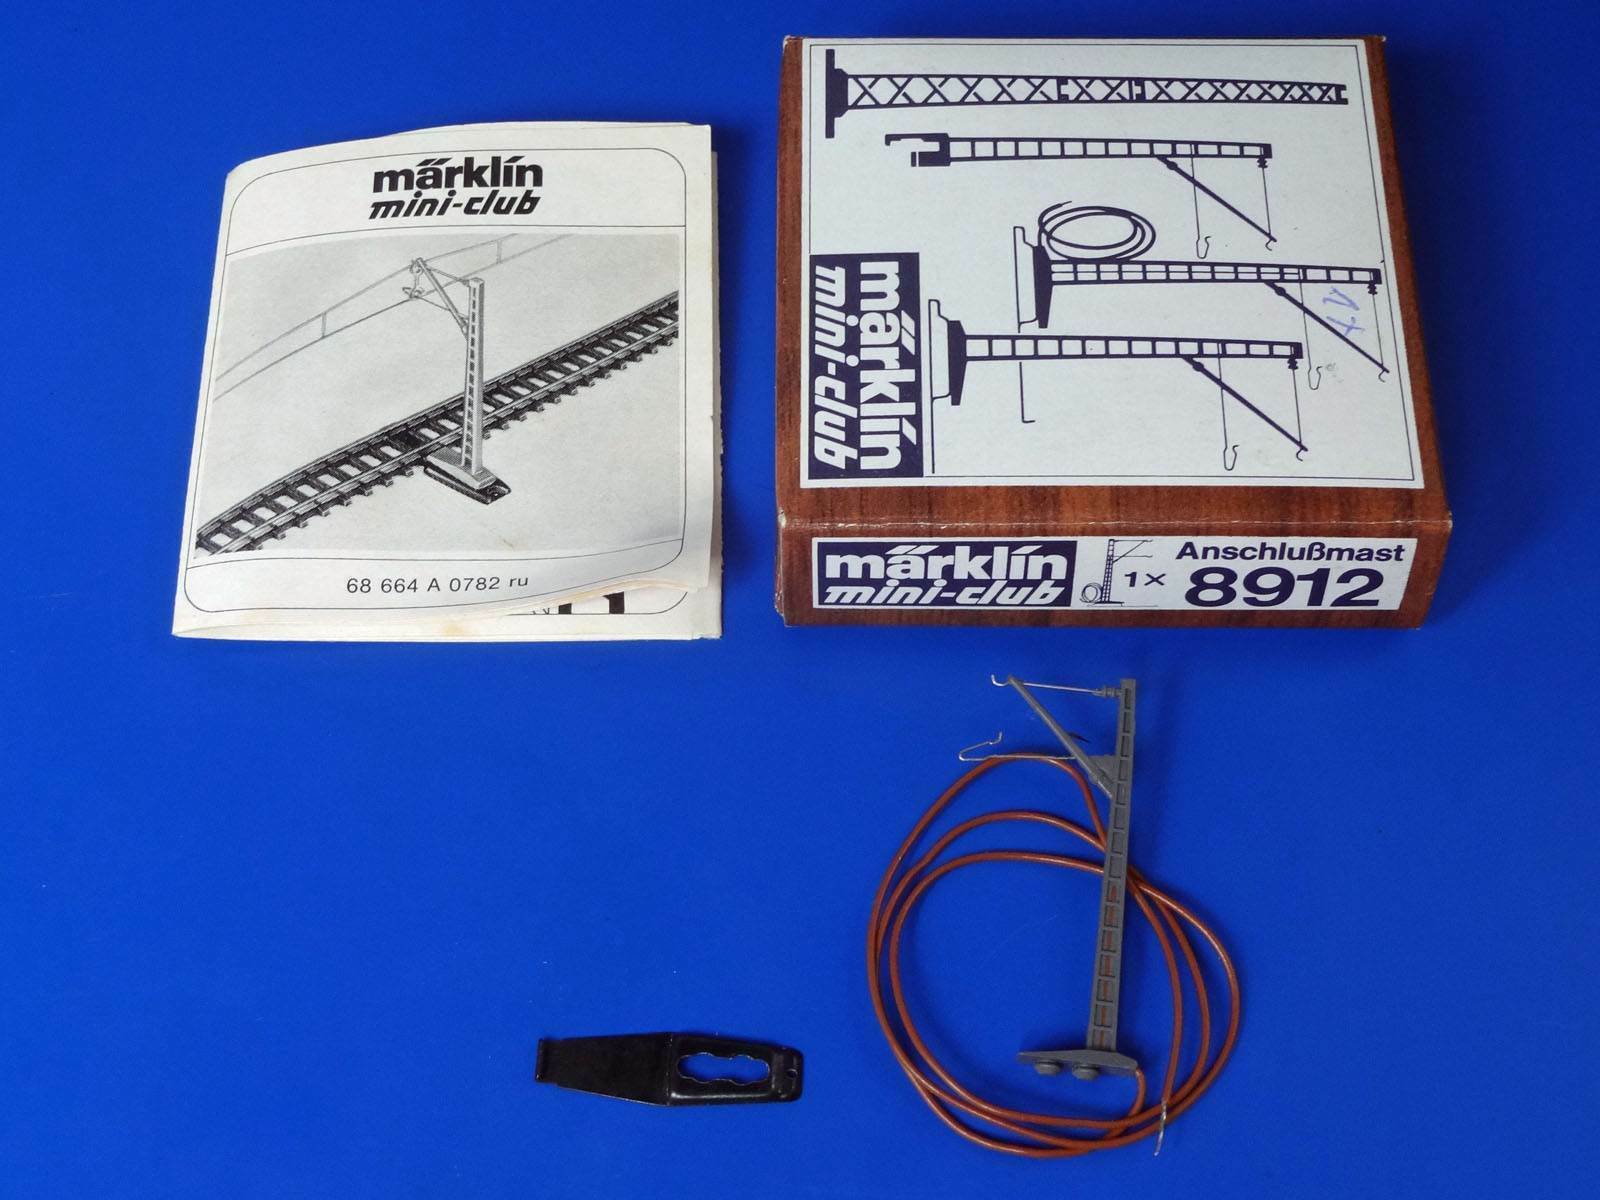 Marklin Z - 8912 - Catenary Feeder Mast + Description - Mini-club / Box - New